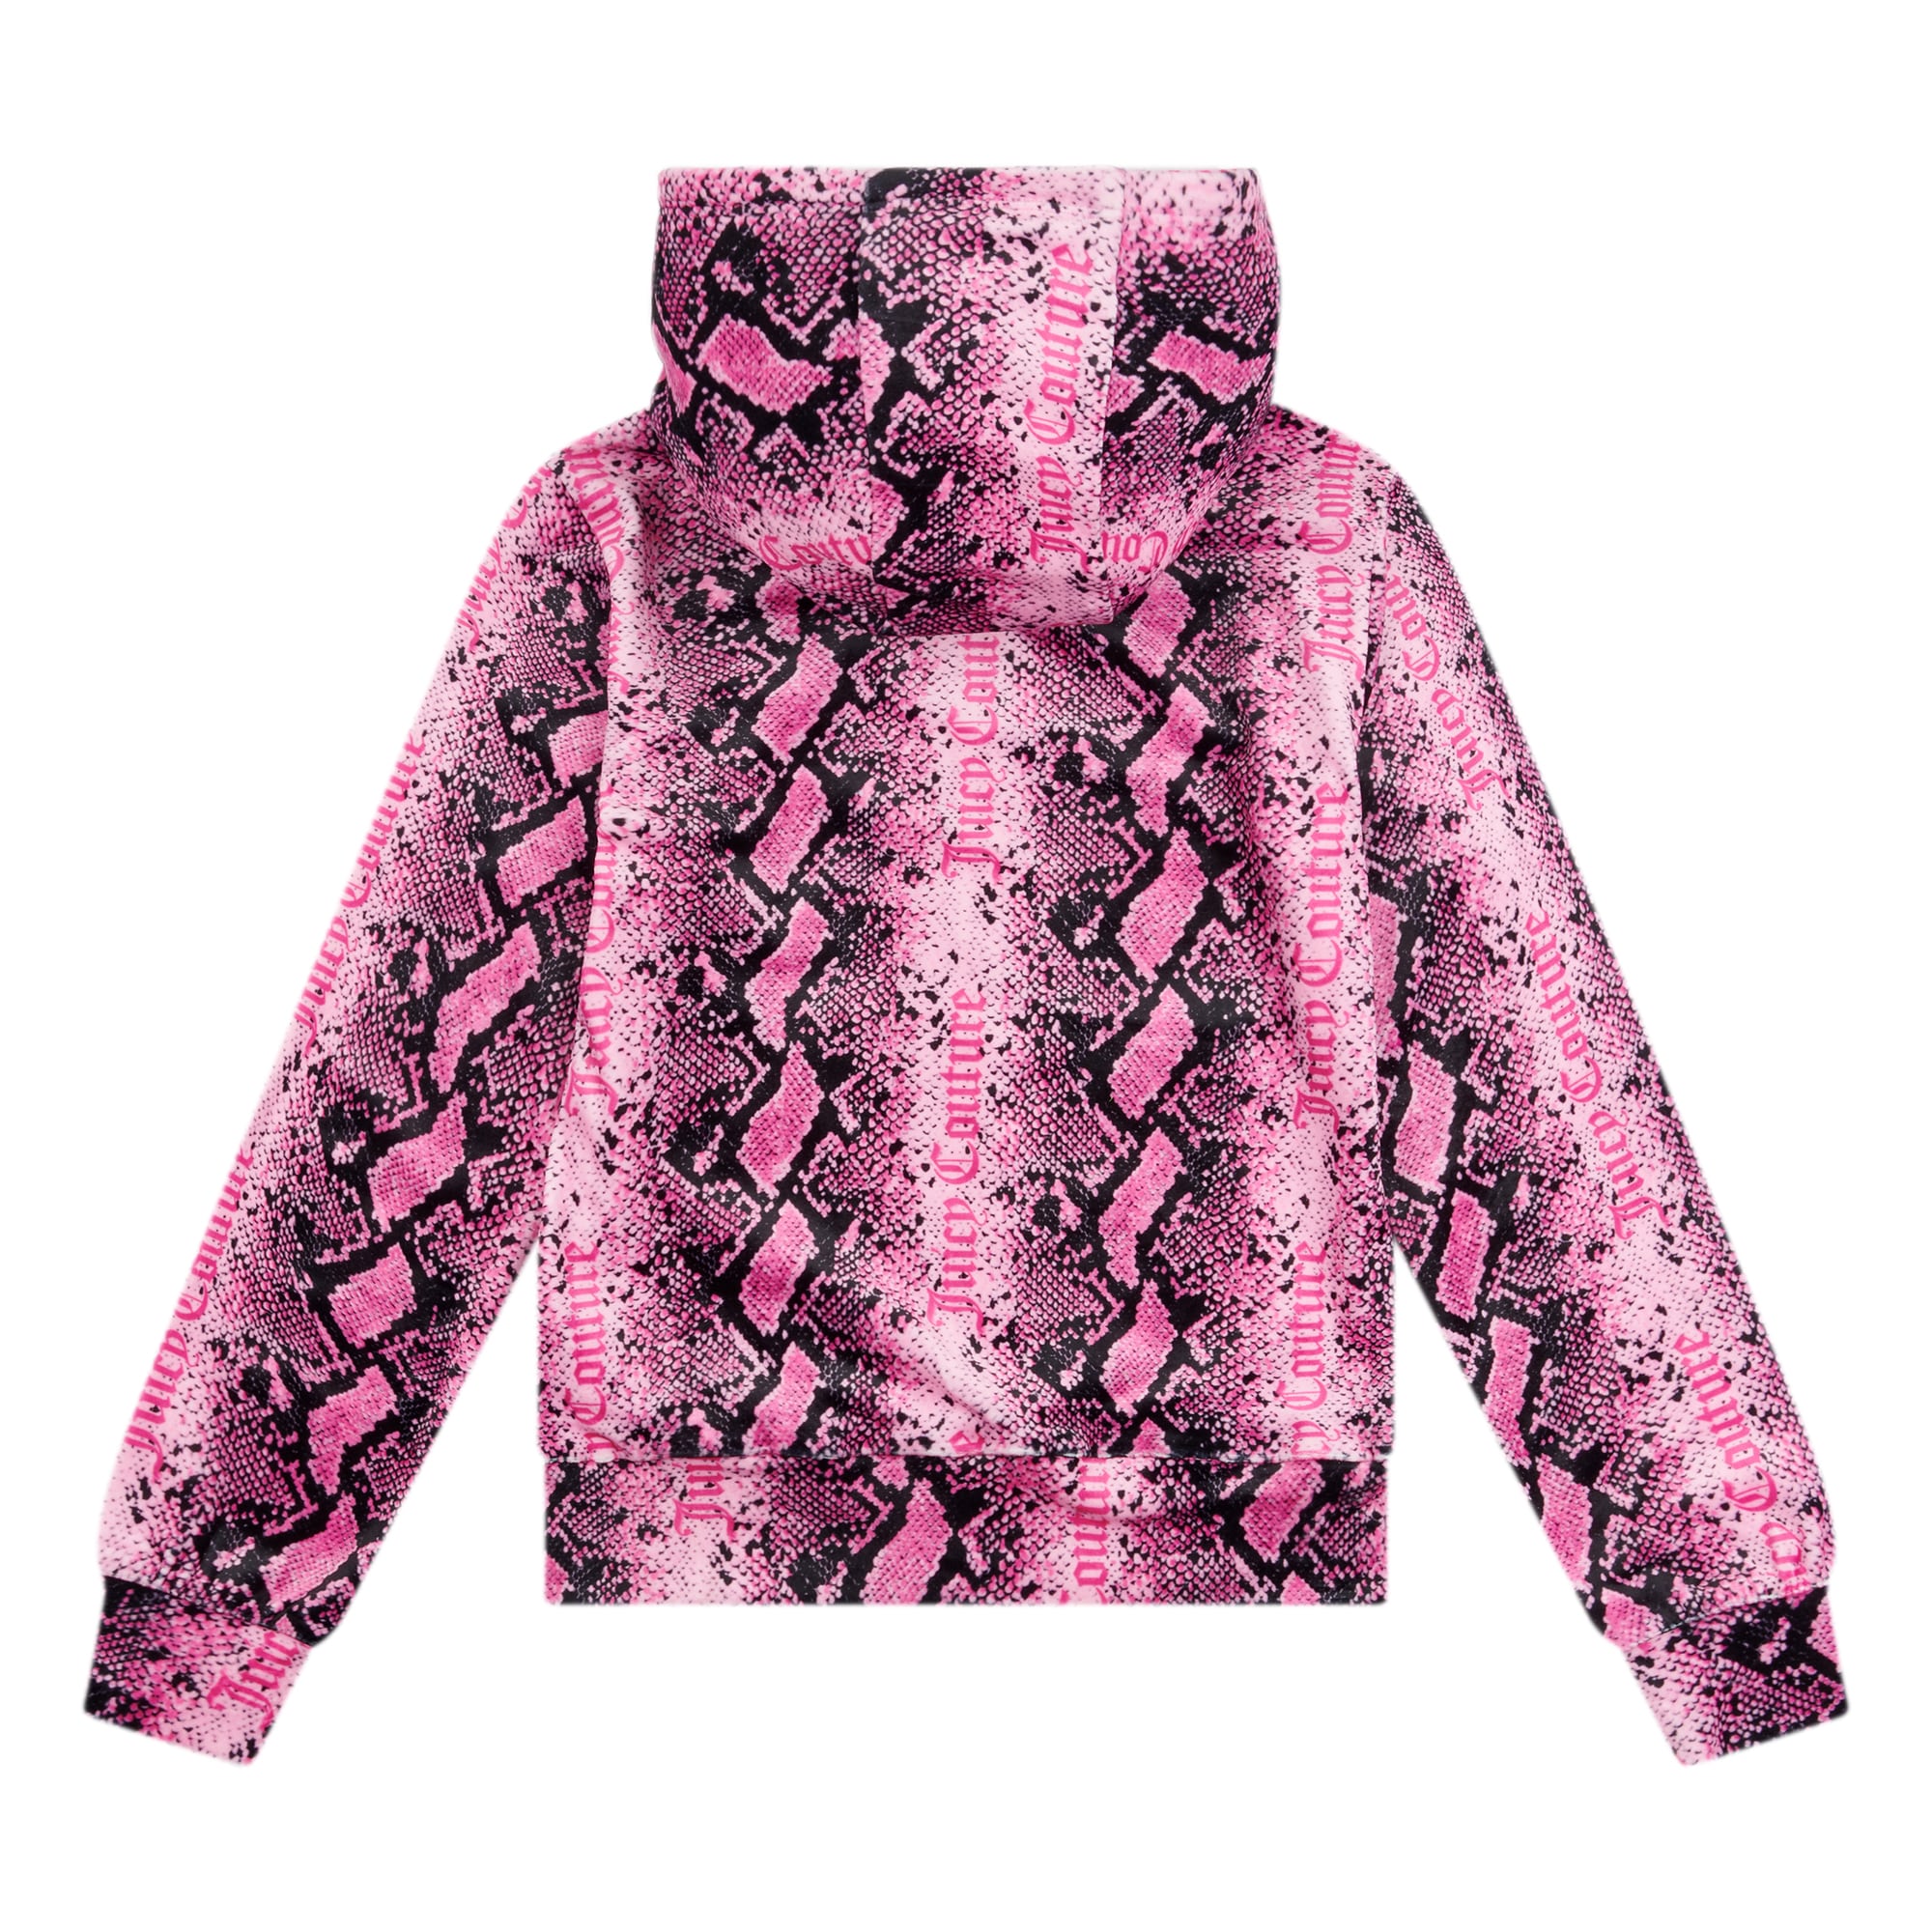 Juicy couture girls pink snakeskin hoodie back view